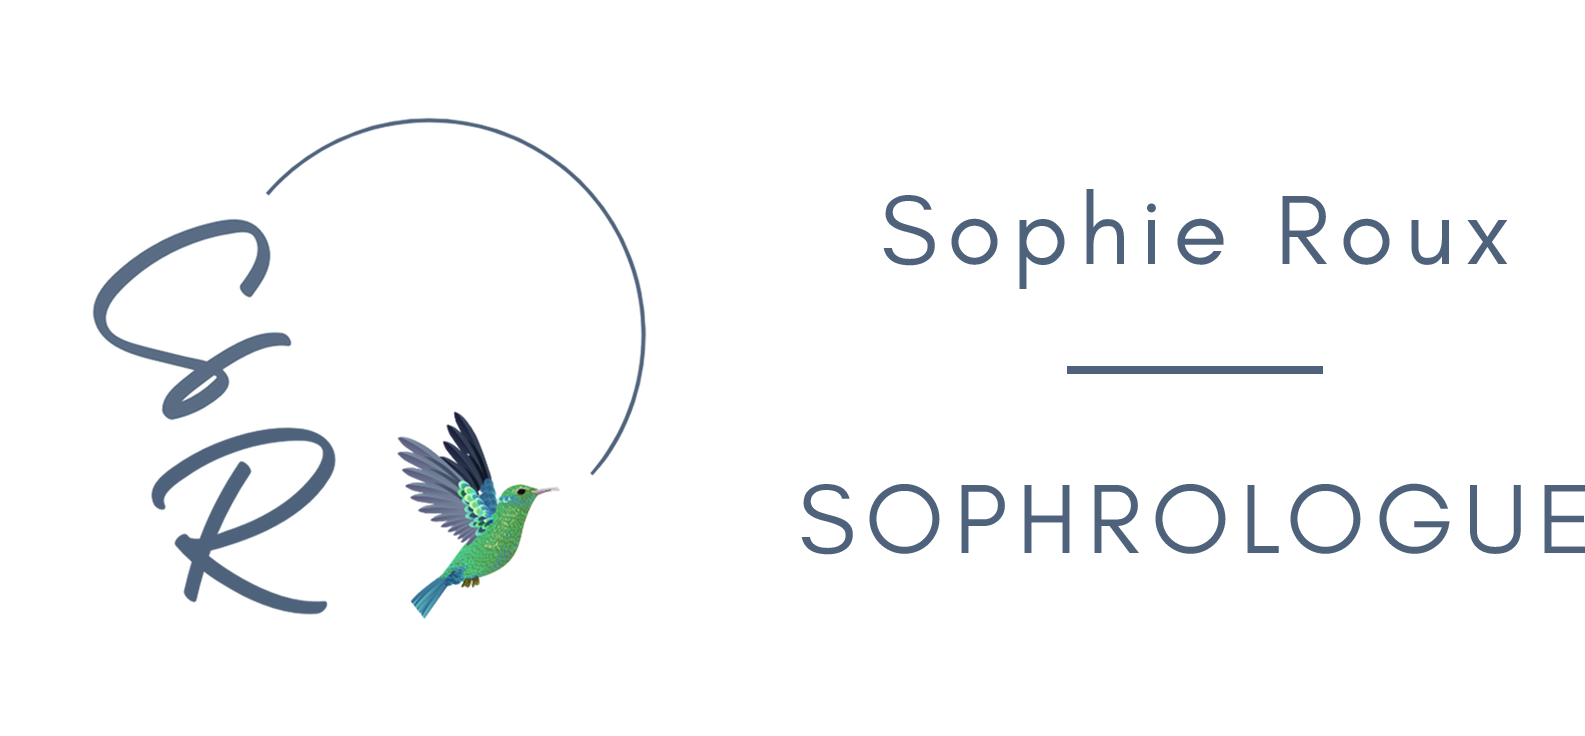 Sophie Roux – Harmonie entre corps et esprit